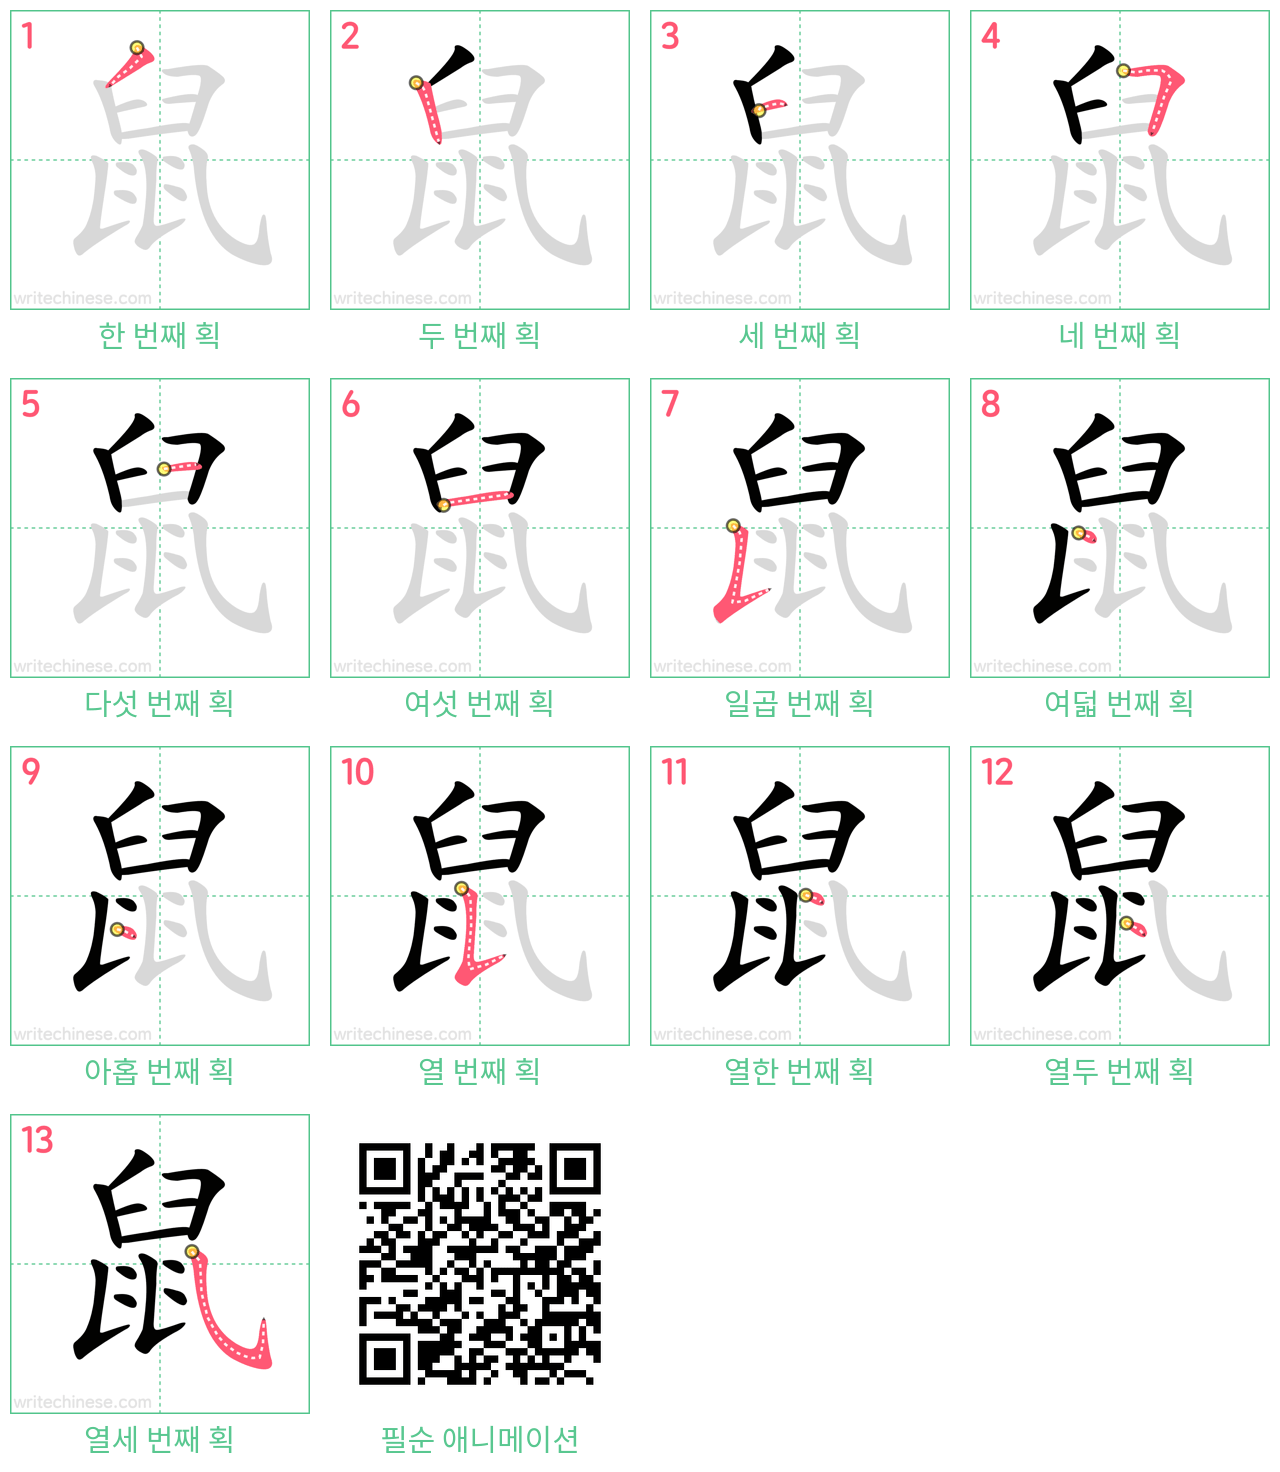 鼠 step-by-step stroke order diagrams